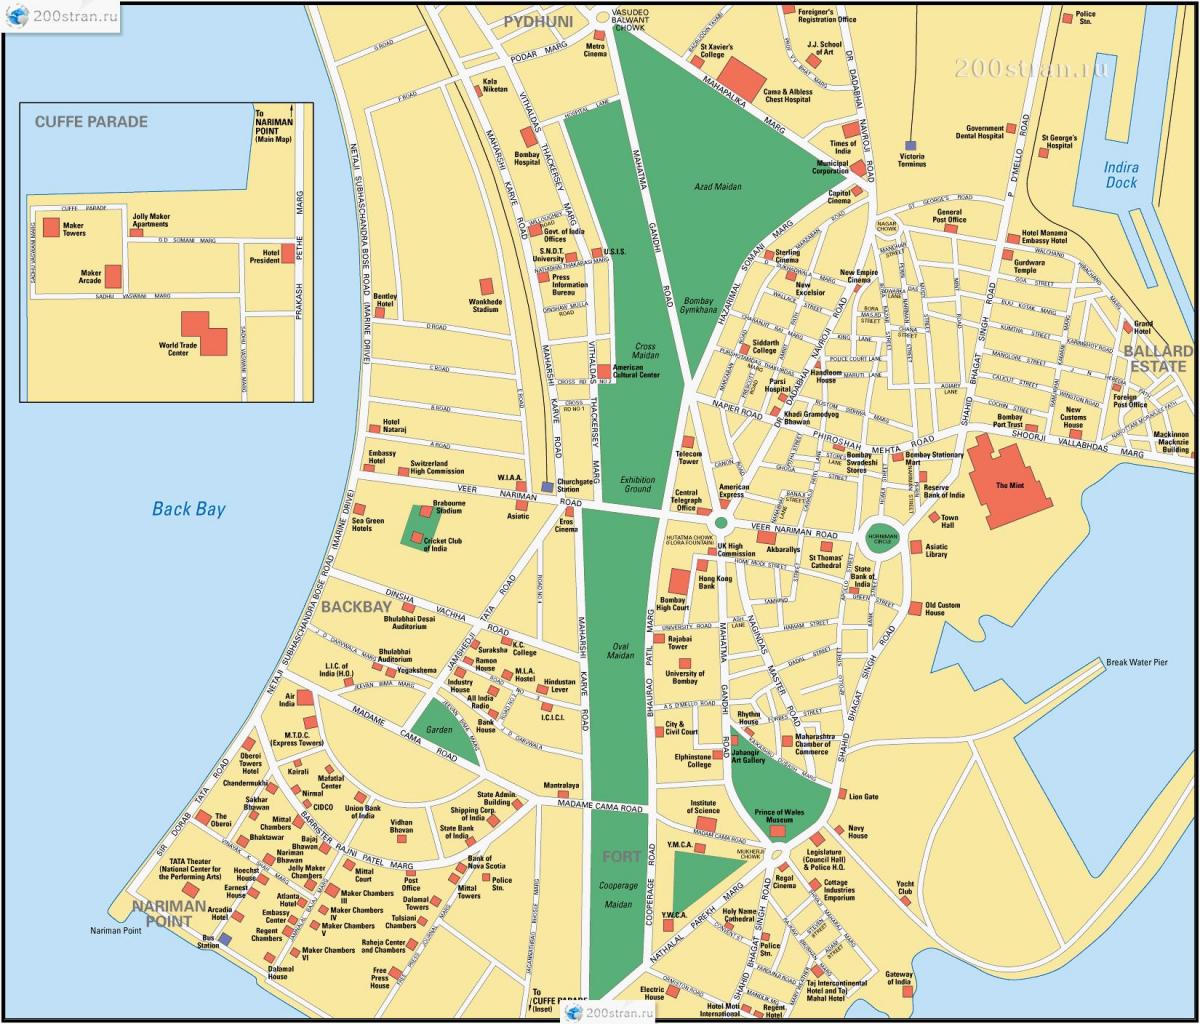 Mumbai - Bombay streets map